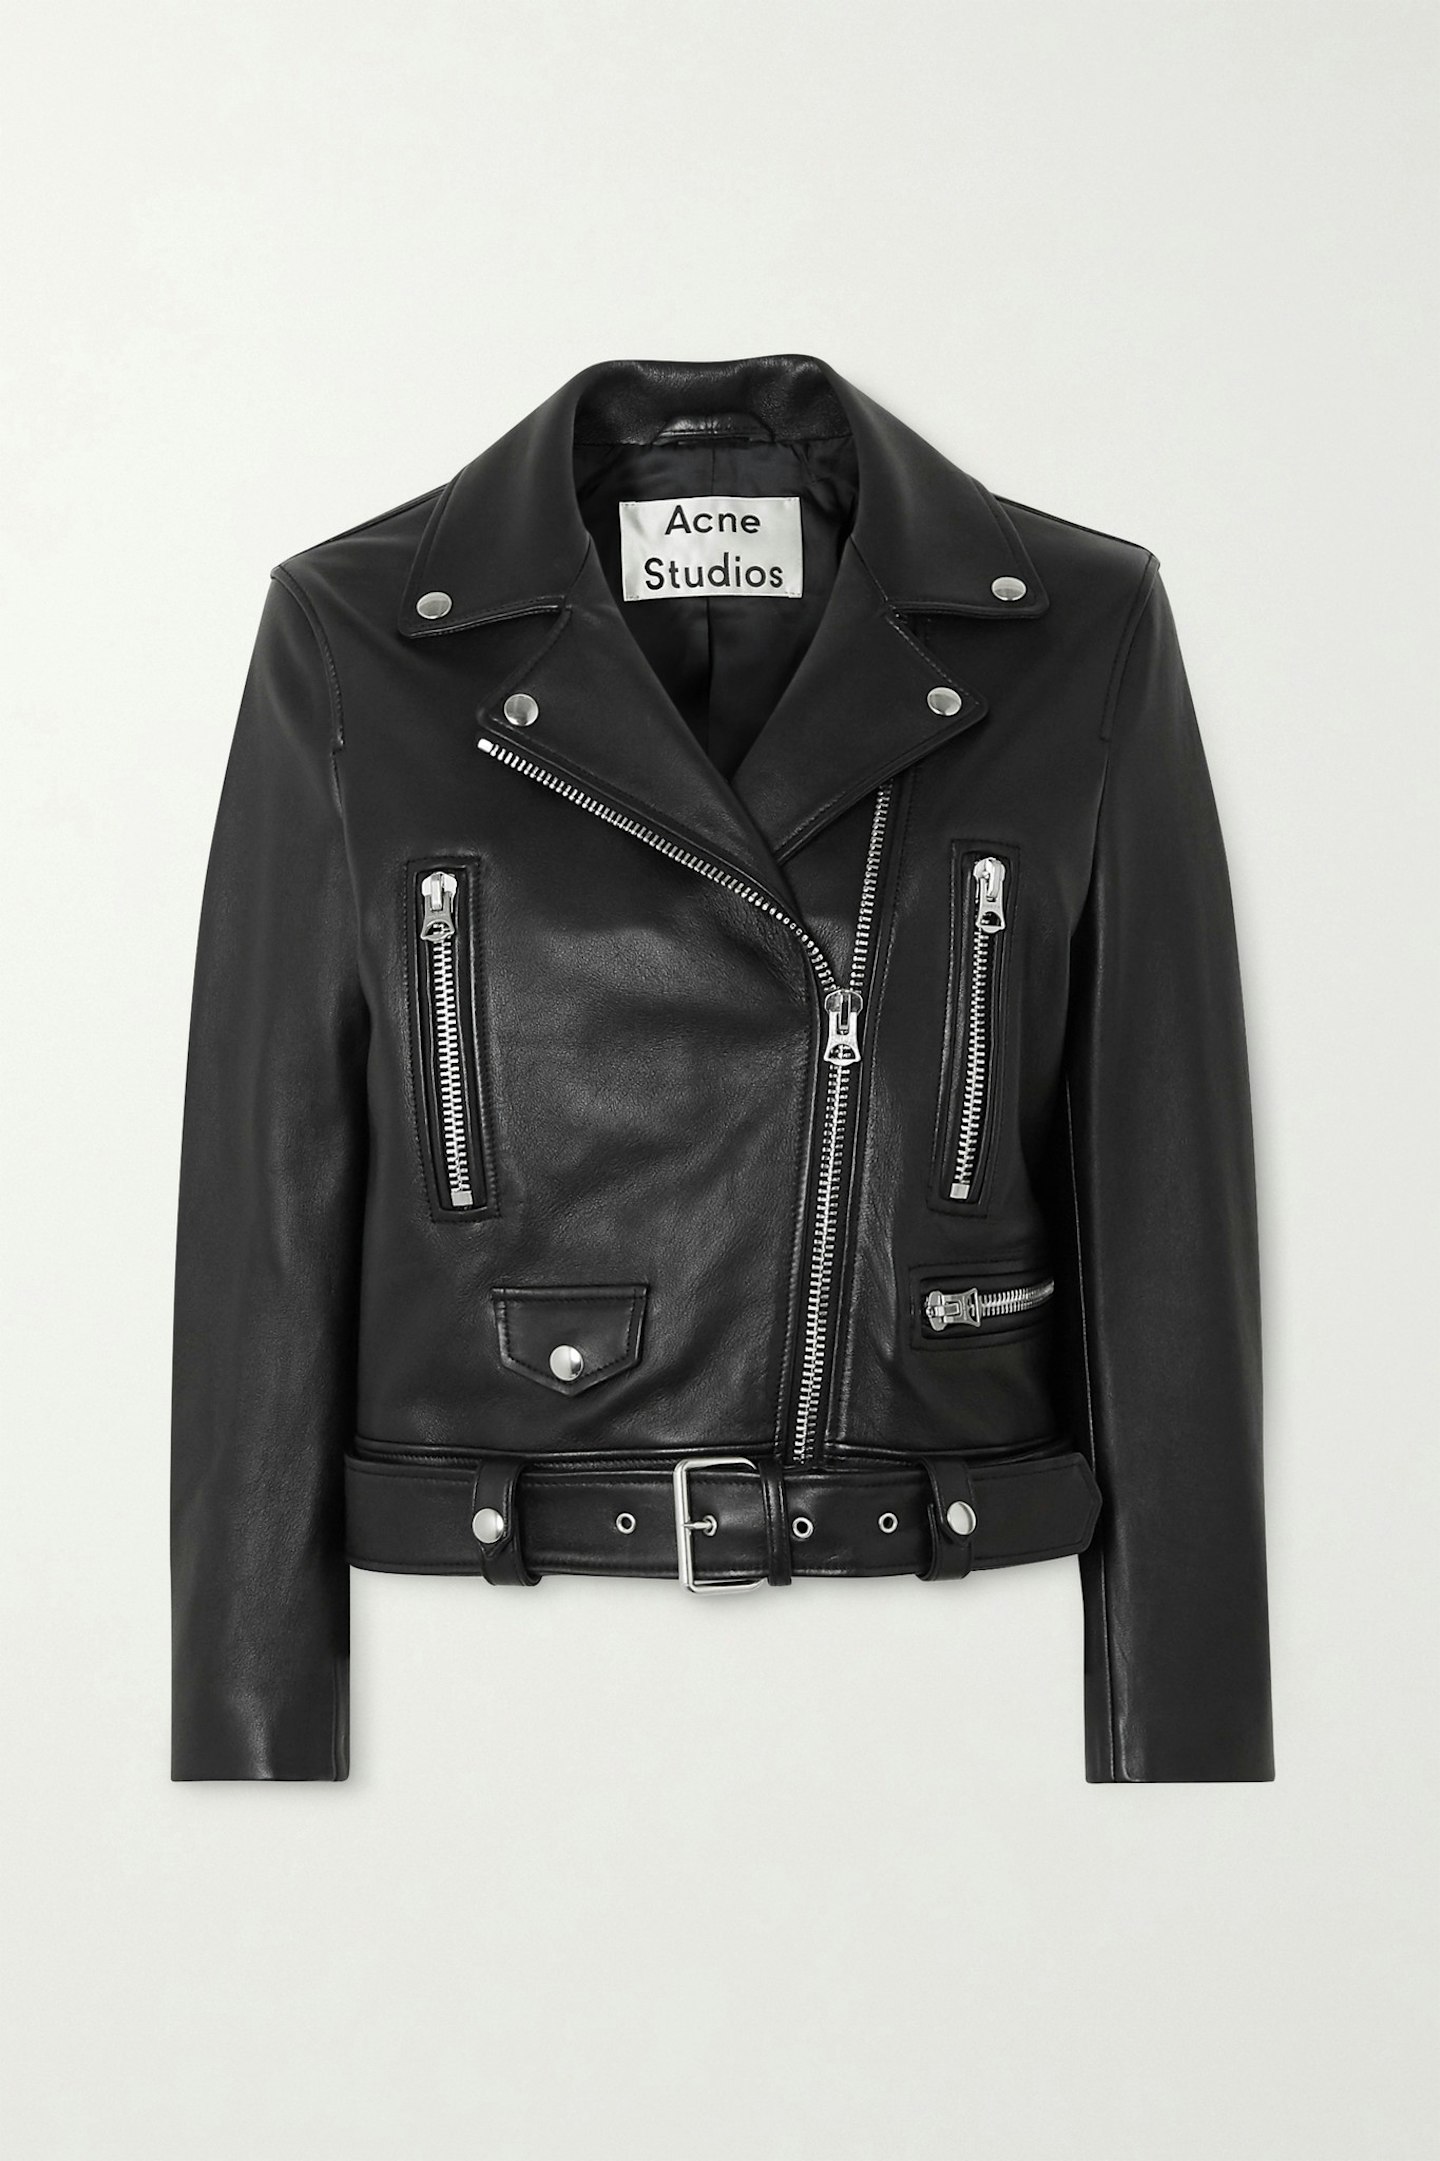 Acne Studios biker jacket